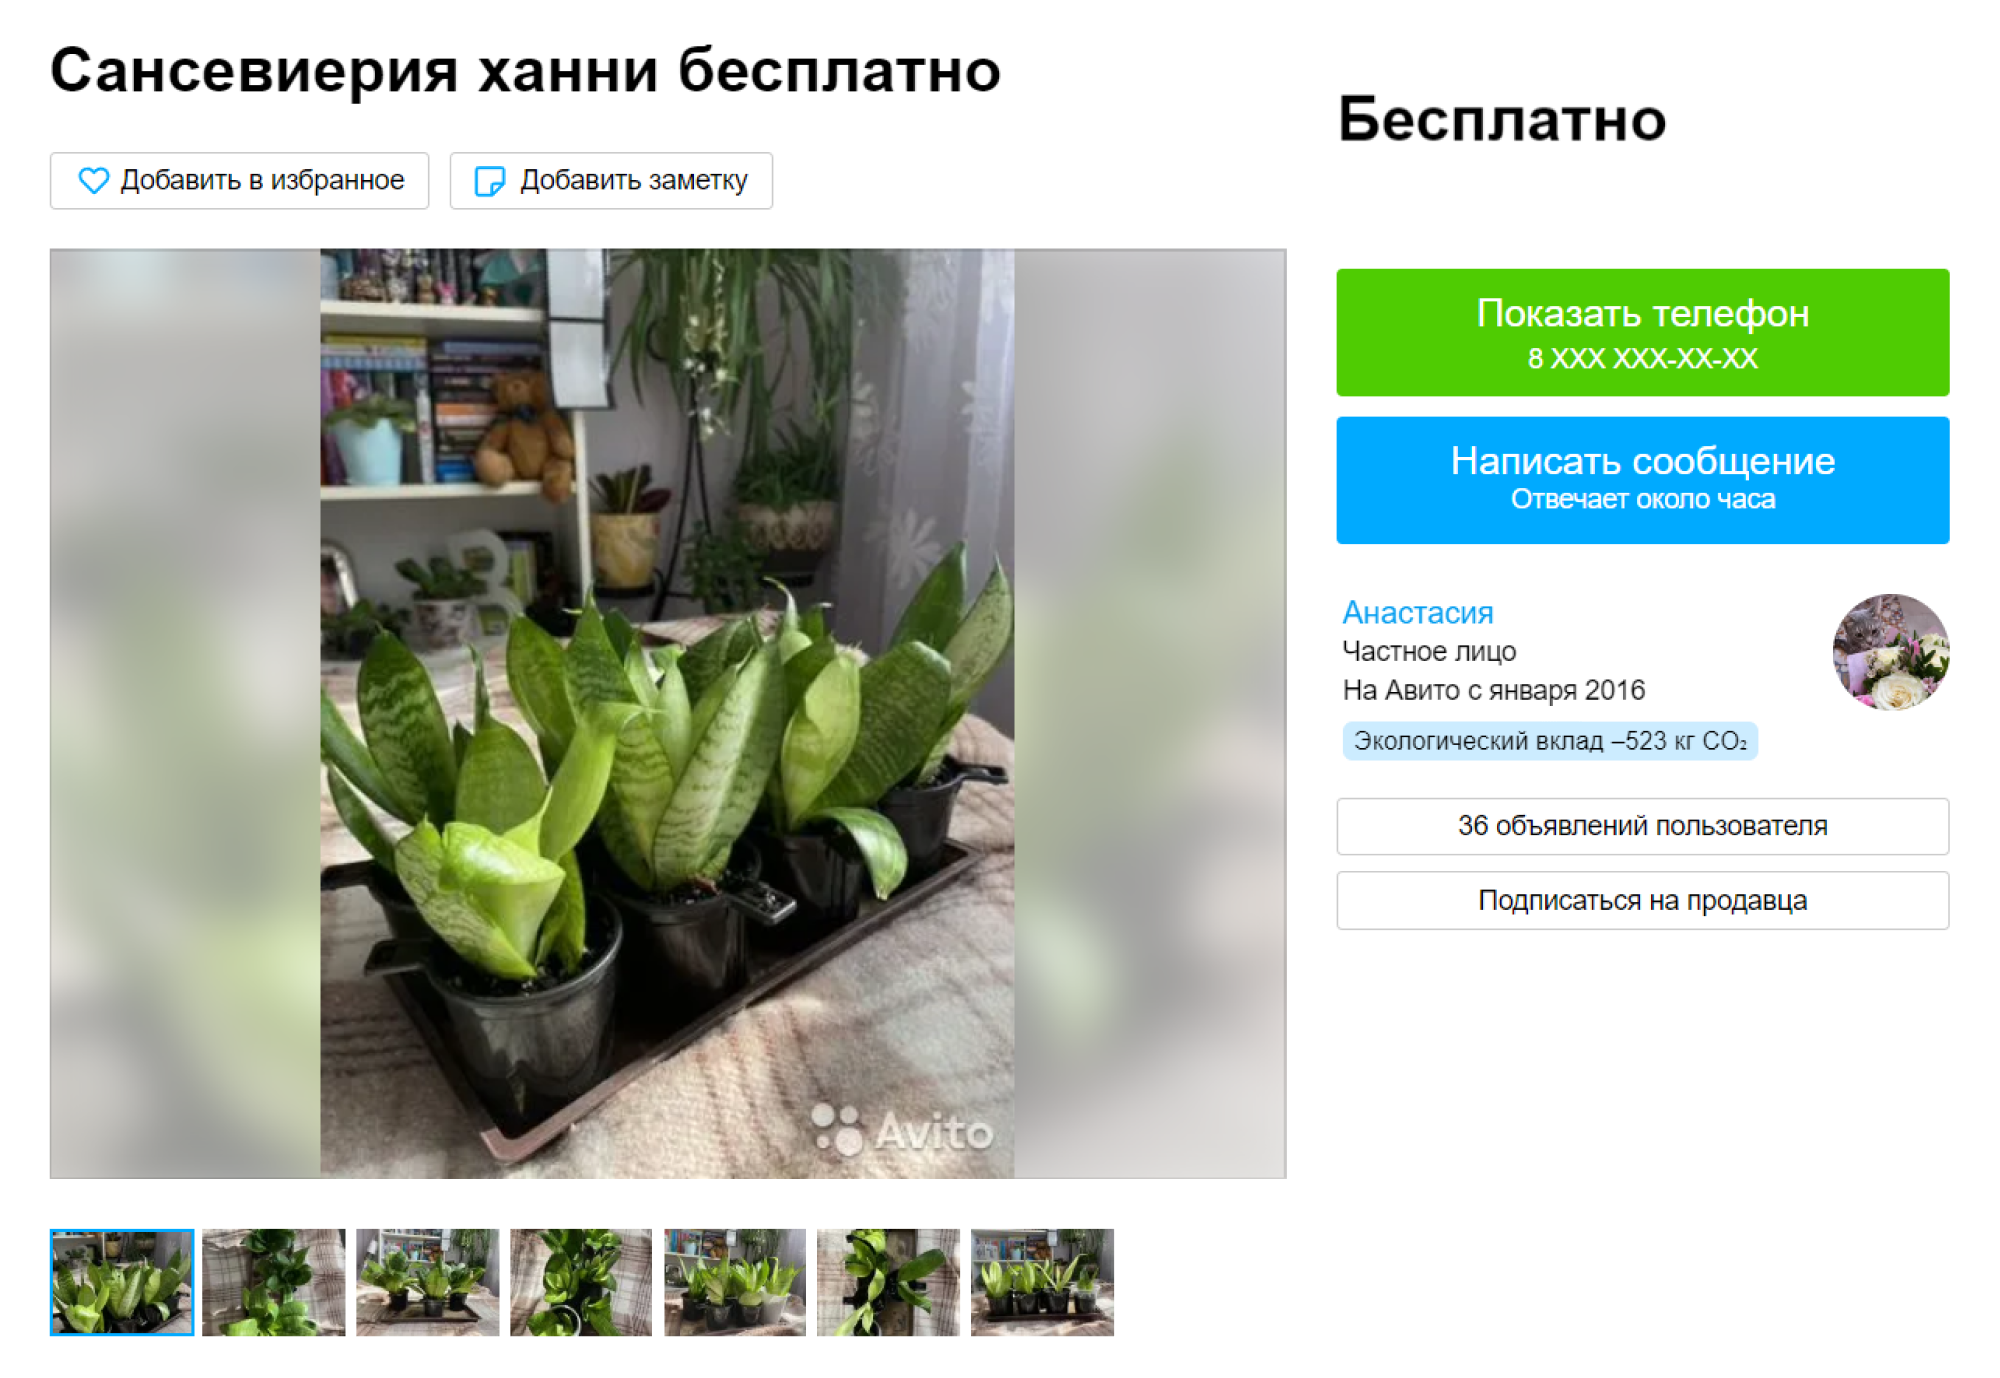 Так я нашла бесплатные сансевиерии, которые в магазине стоят от 800 ₽. Источник: avito.ru